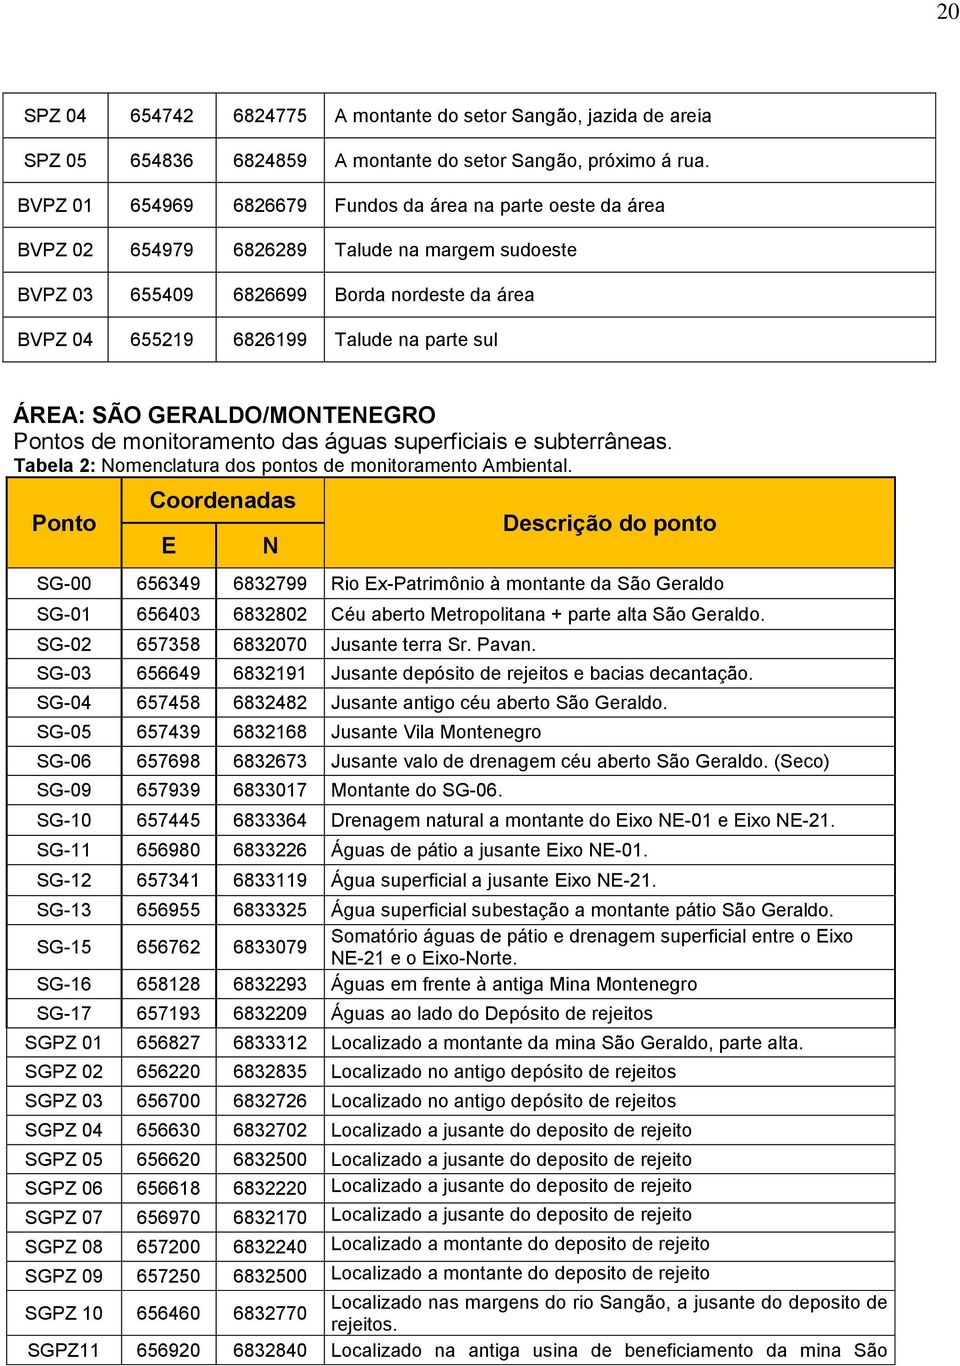 ÁREA: SÃO GERALDO/MONTENEGRO Pontos de monitoramento das águas superficiais e subterrâneas. Tabela 2: Nomenclatura dos pontos de monitoramento Ambiental.